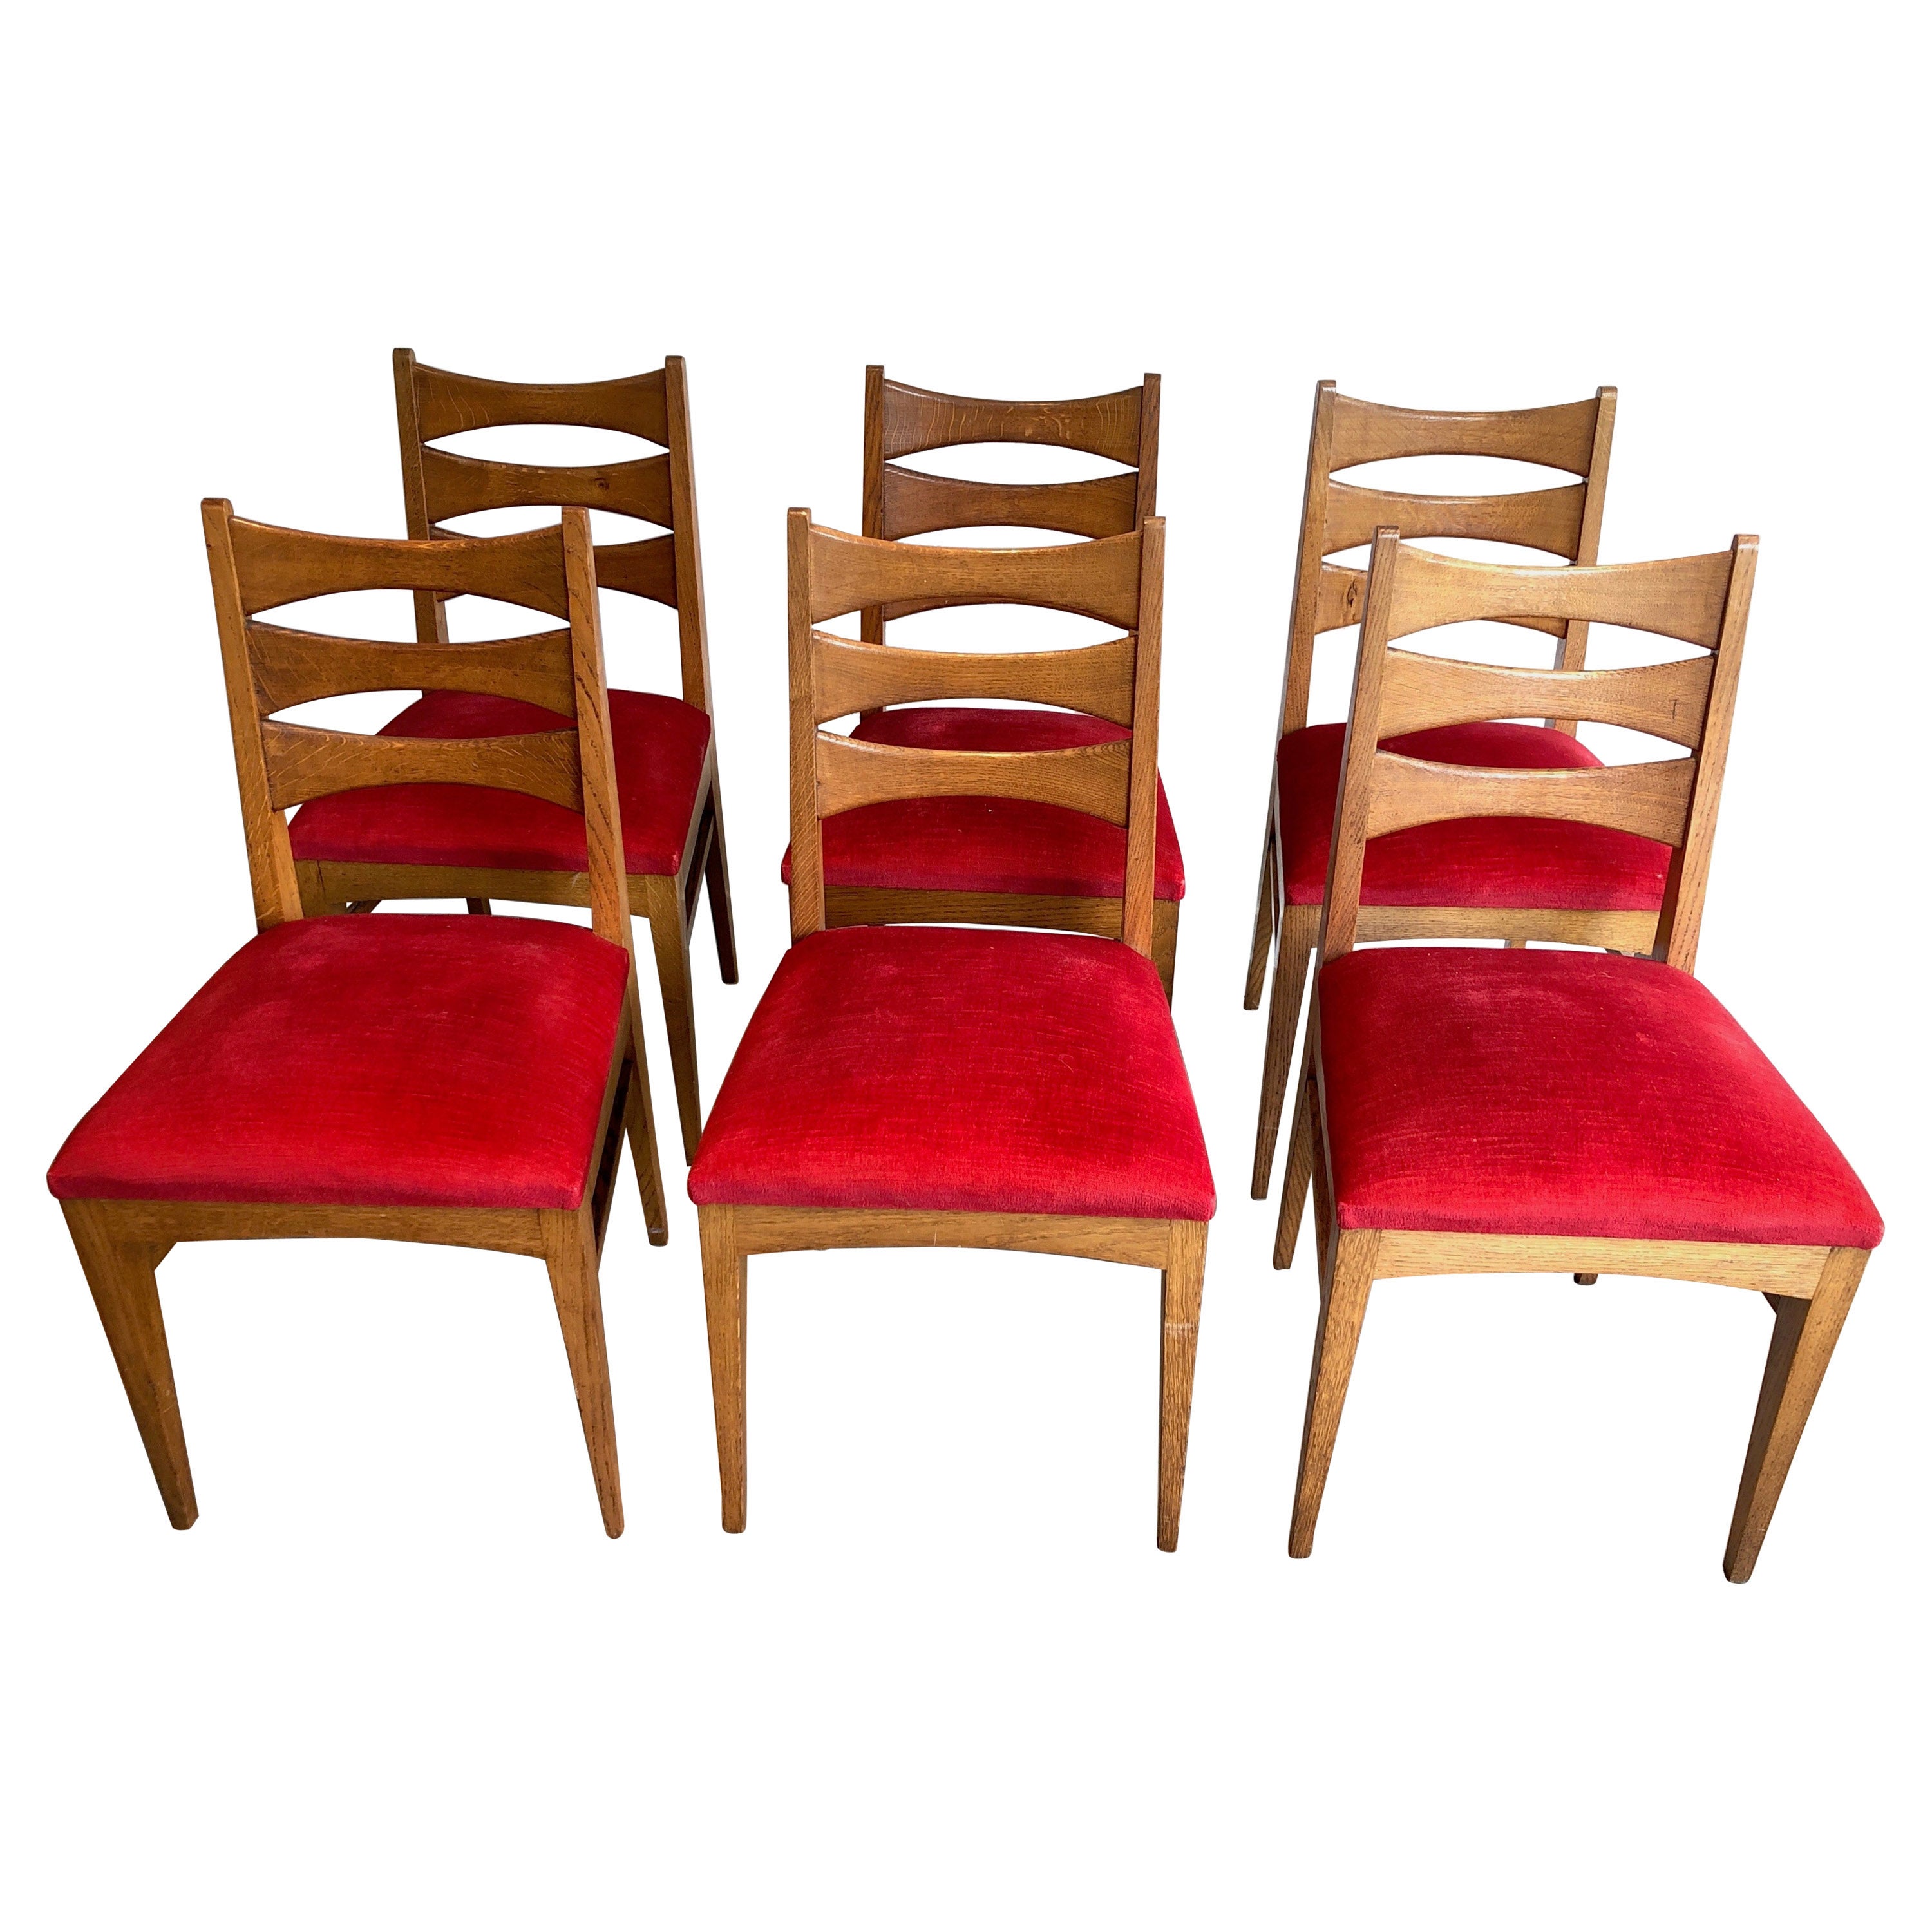 Ensemble de 6 chaises en chêne et velours rouge. Œuvres françaises, vers 1950